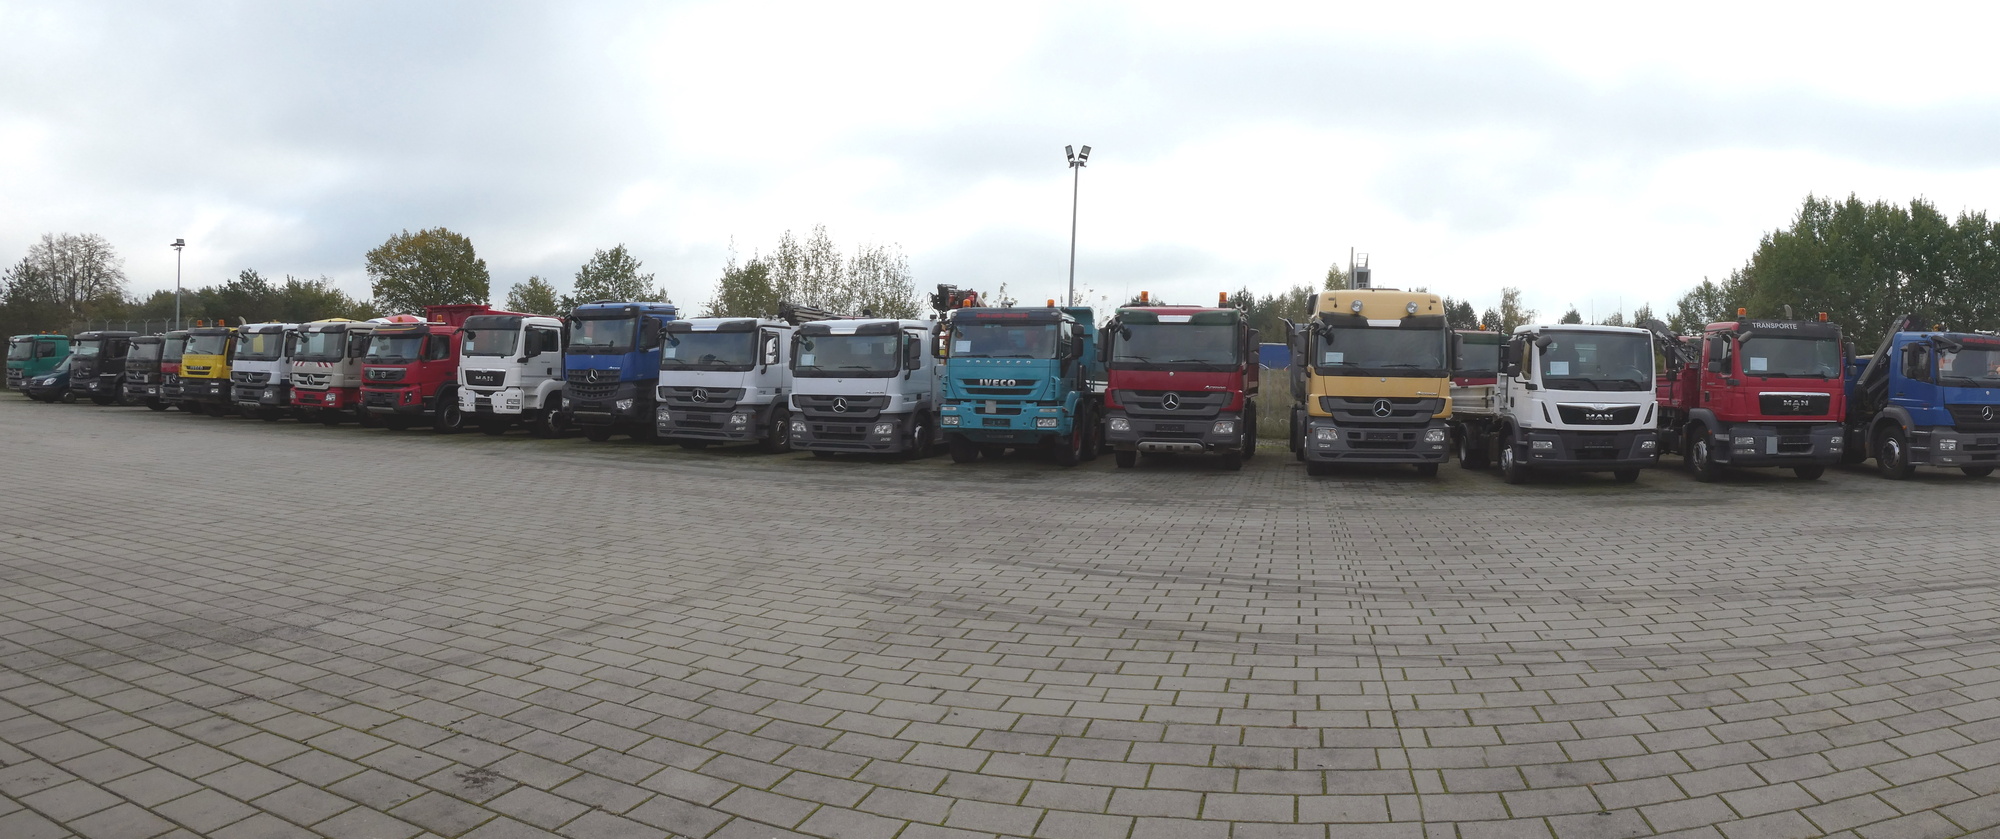 Henze Truck GmbH - Возила за продажба undefined: слика 1